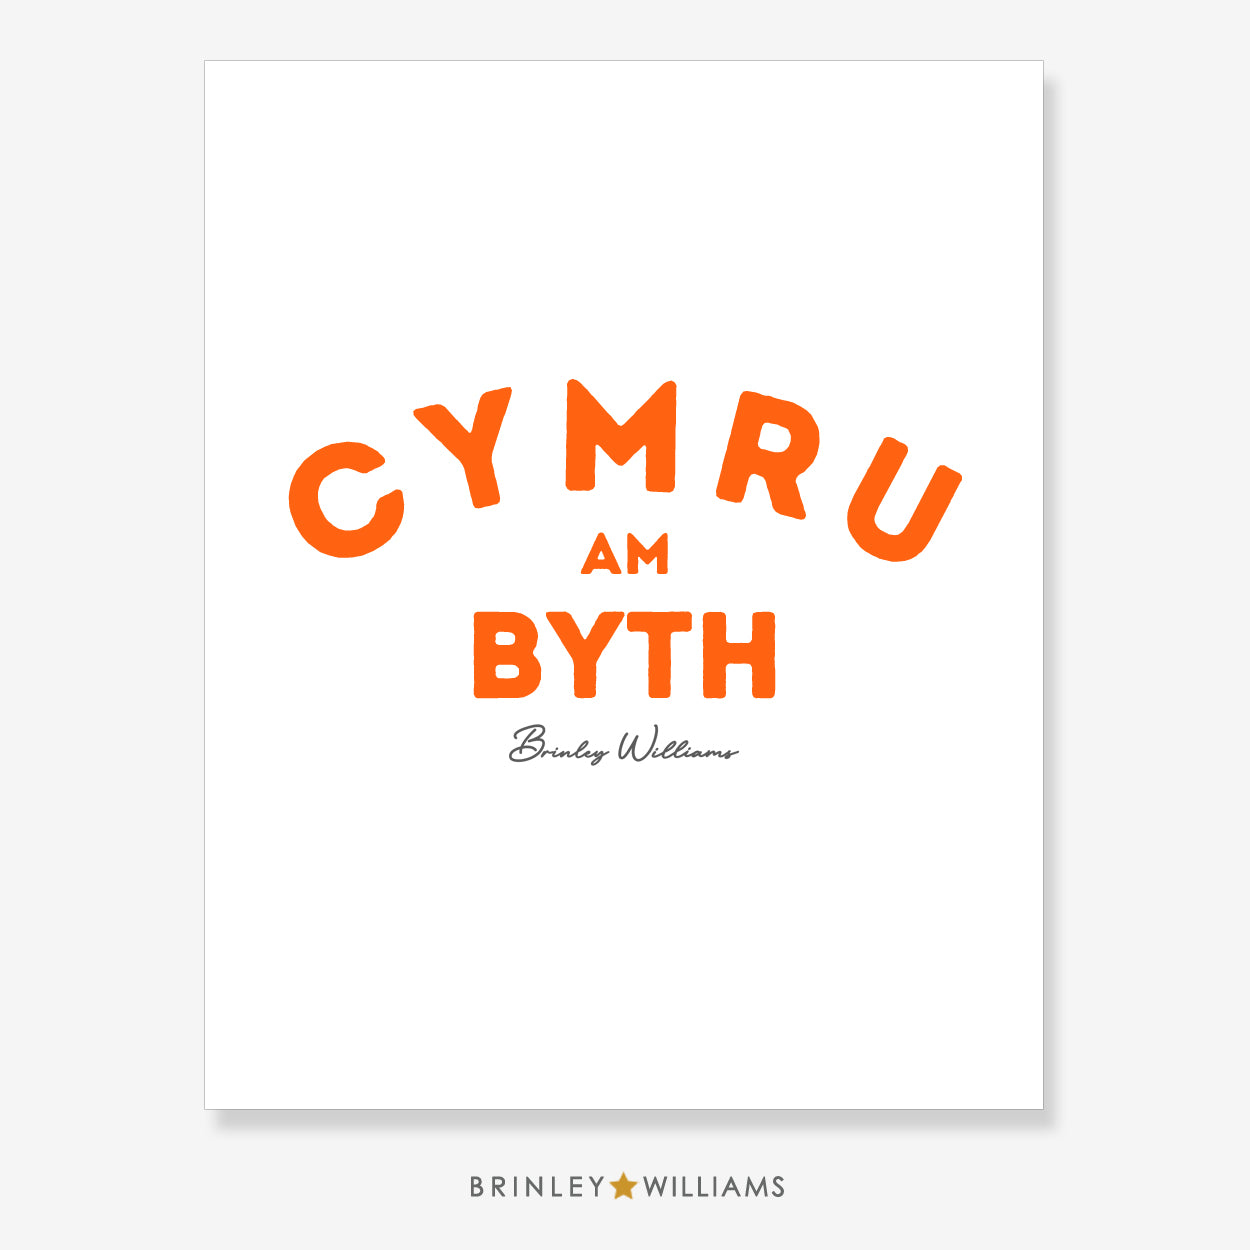 Cymru am Byth Wall Art Poster - Orange